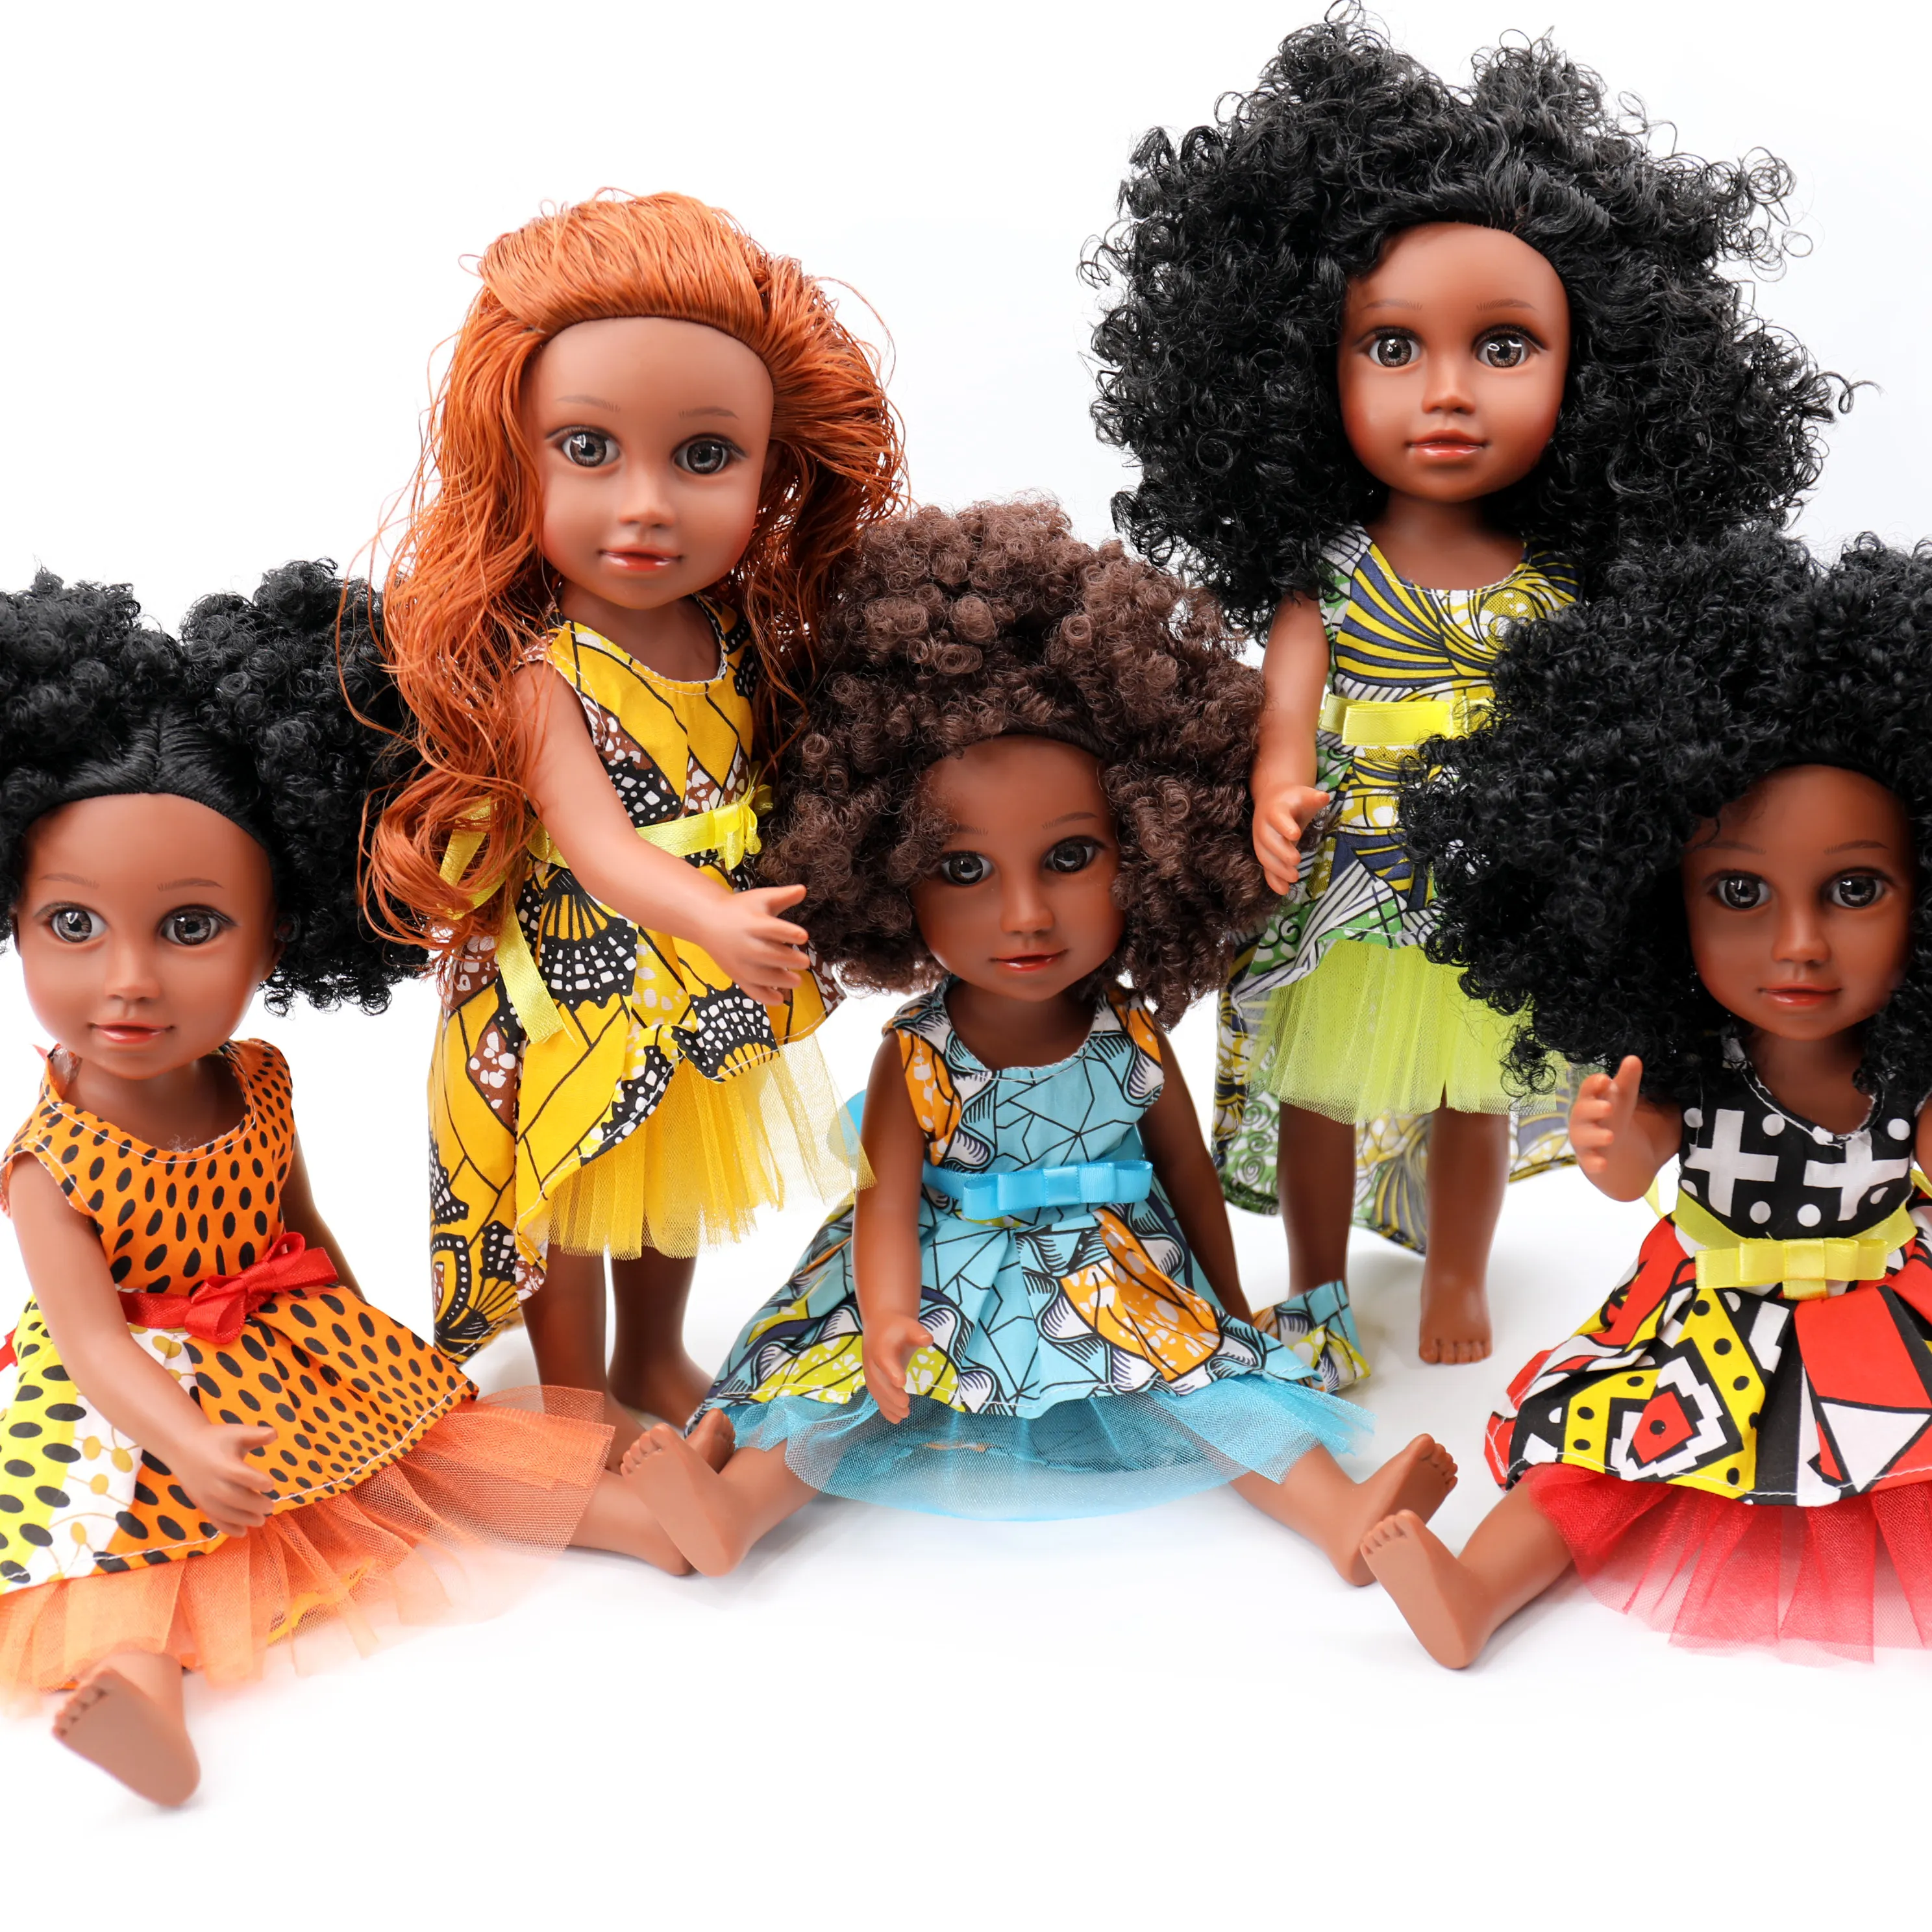 دمى بناتي سوداء بتصميمات مختلفة من Nathaniel, دمى بناتي سوداء بتصميمات جميلة وواقعية مصنوعة من البلاستيك للبيع بالجملة